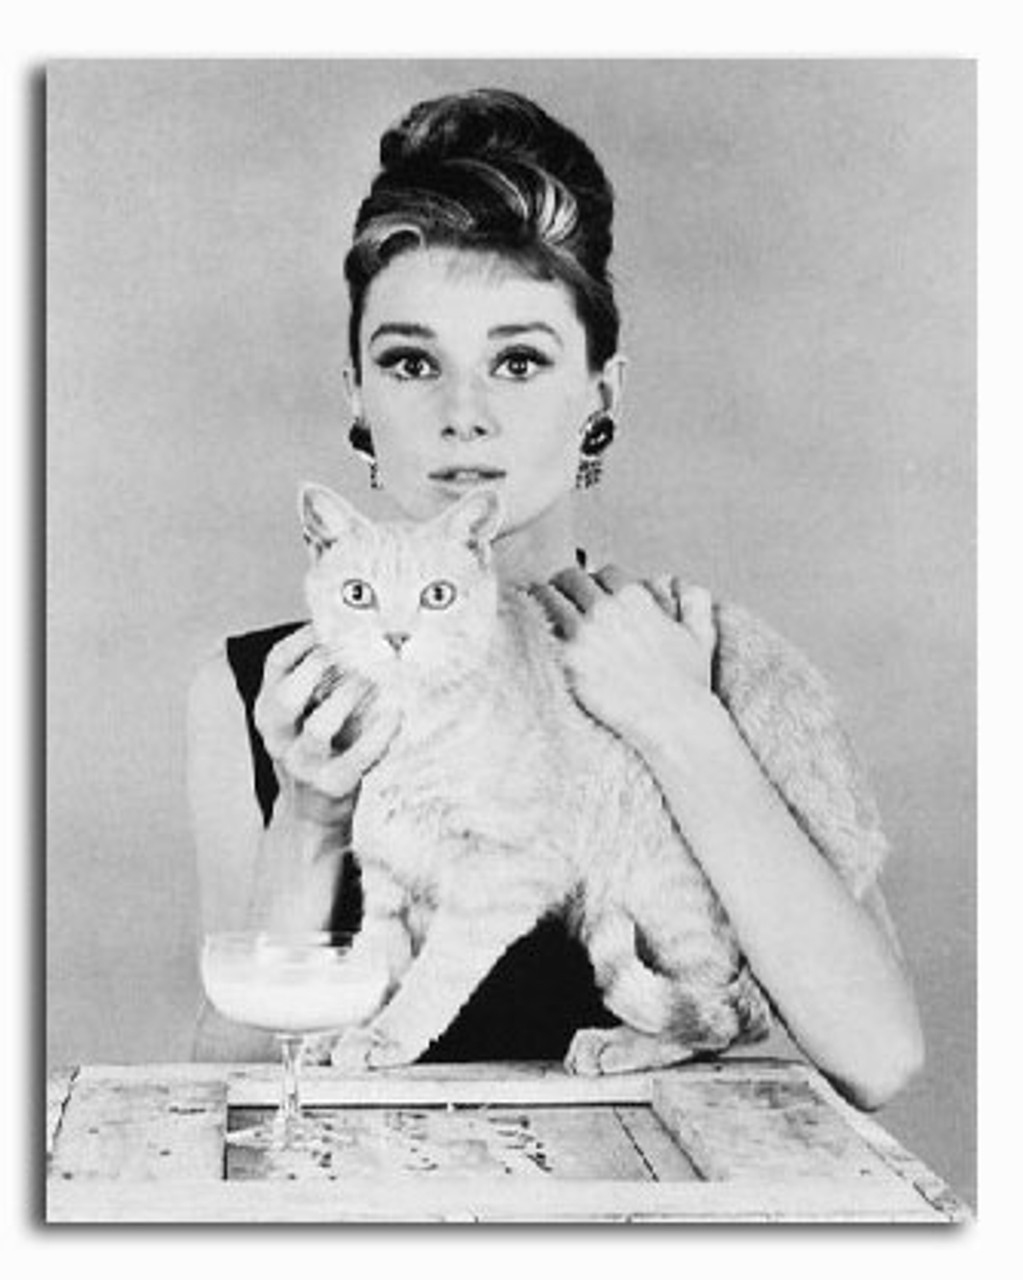 Audrey Hepburn selfie as Holly Golightly in Breakfast at Tiffanys